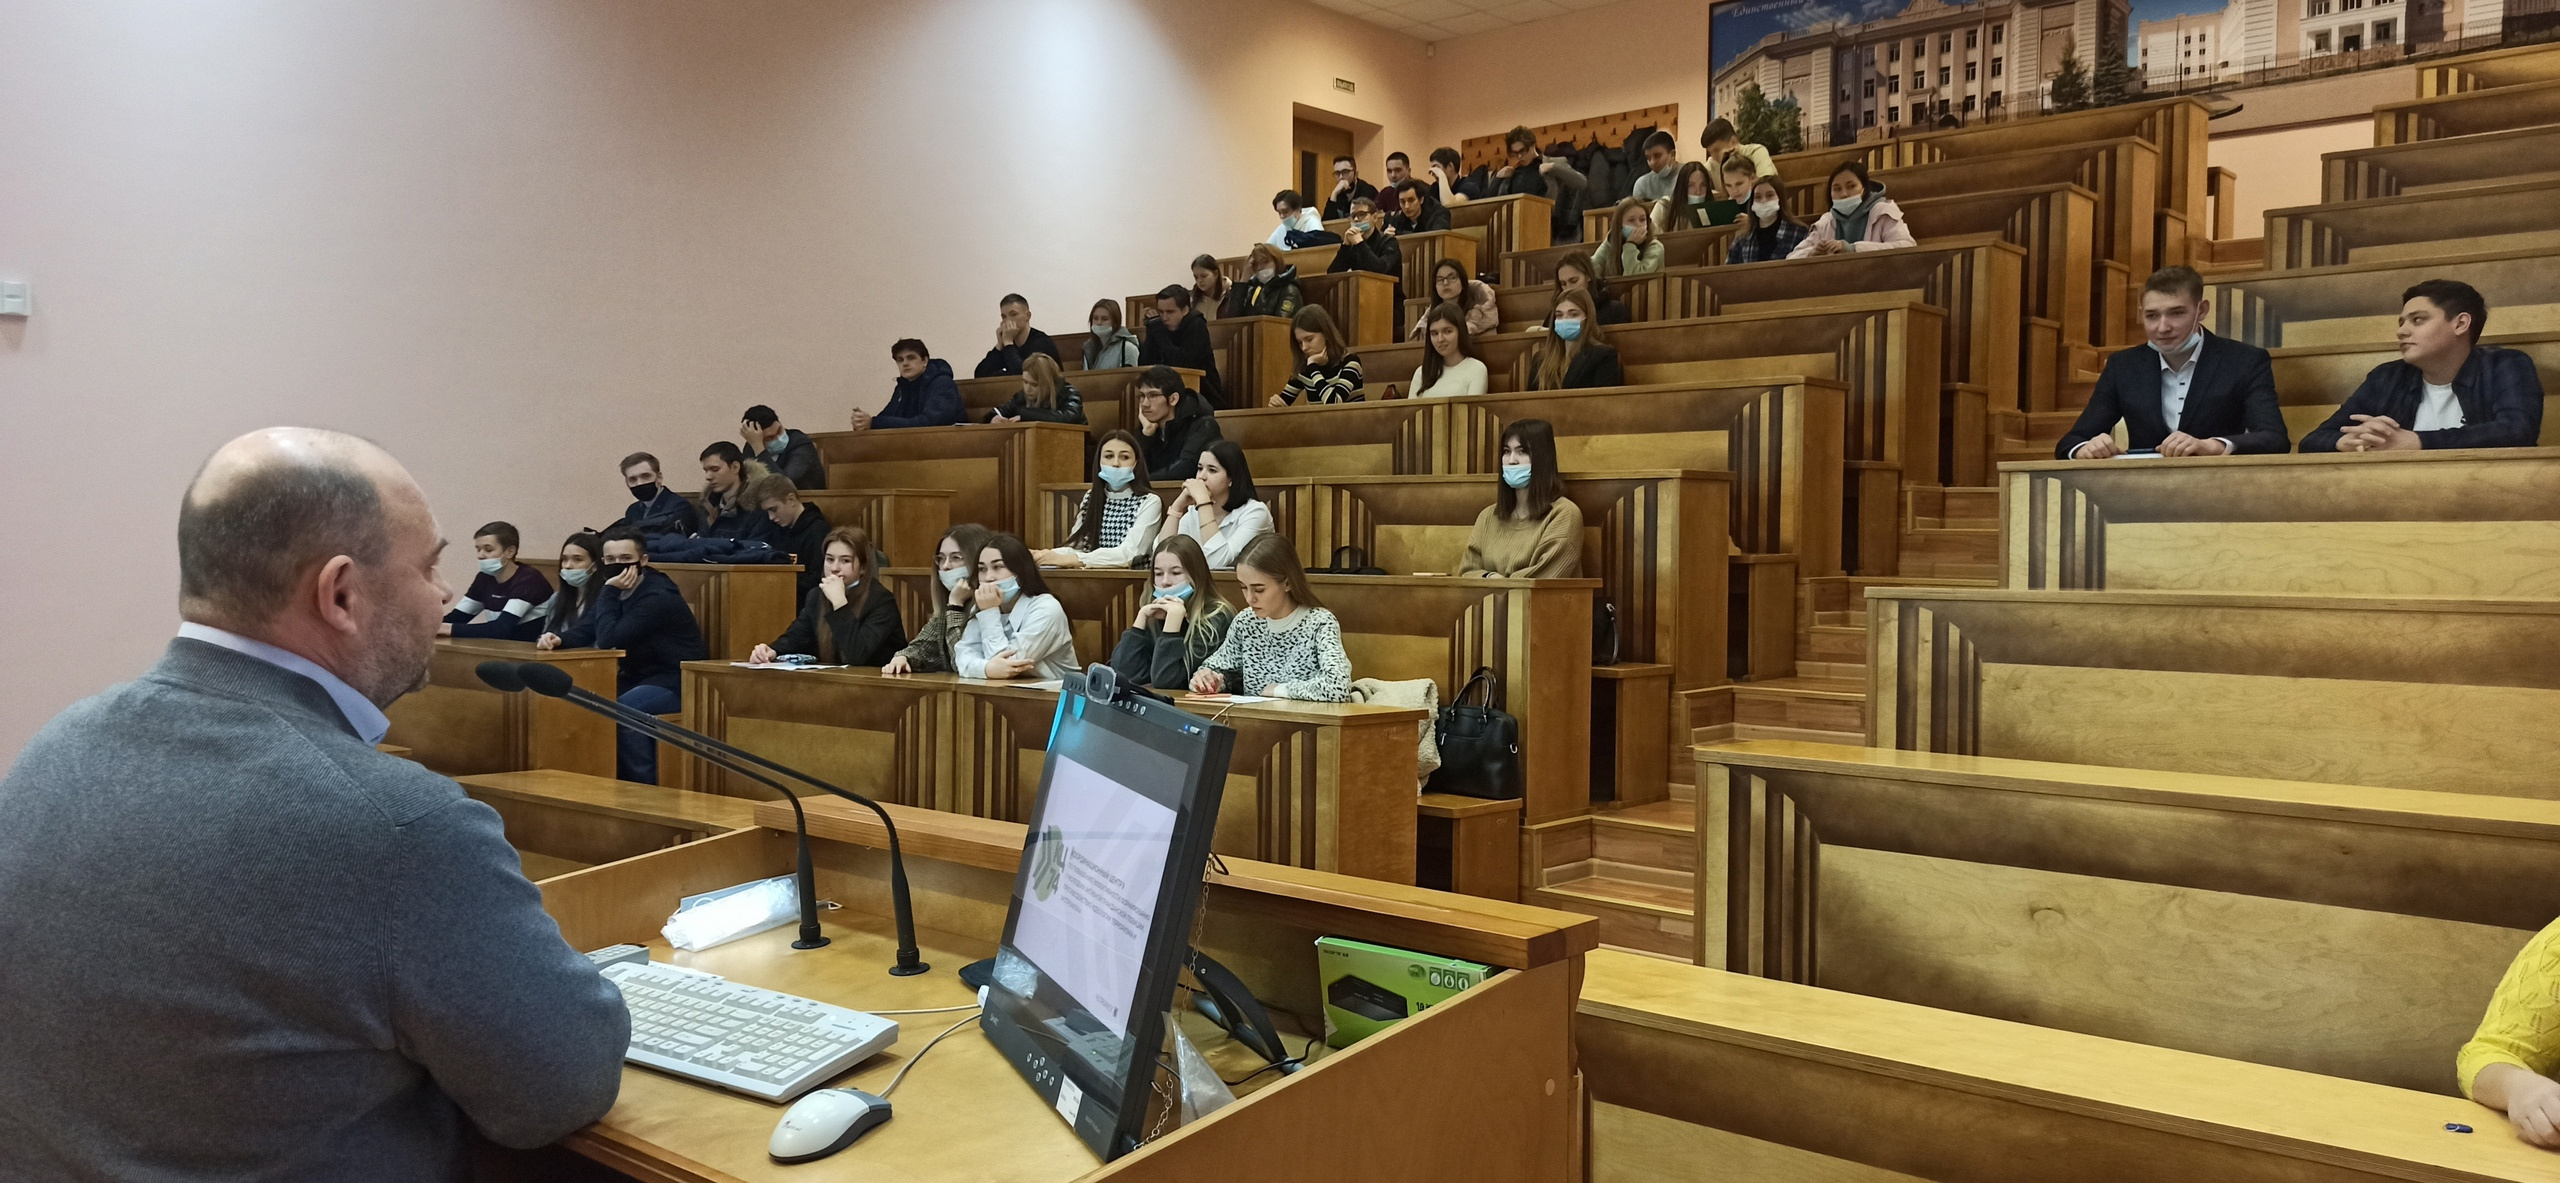 Для реализации мероприятий Координационного центра привлекают студентов ЮУрГГПУ